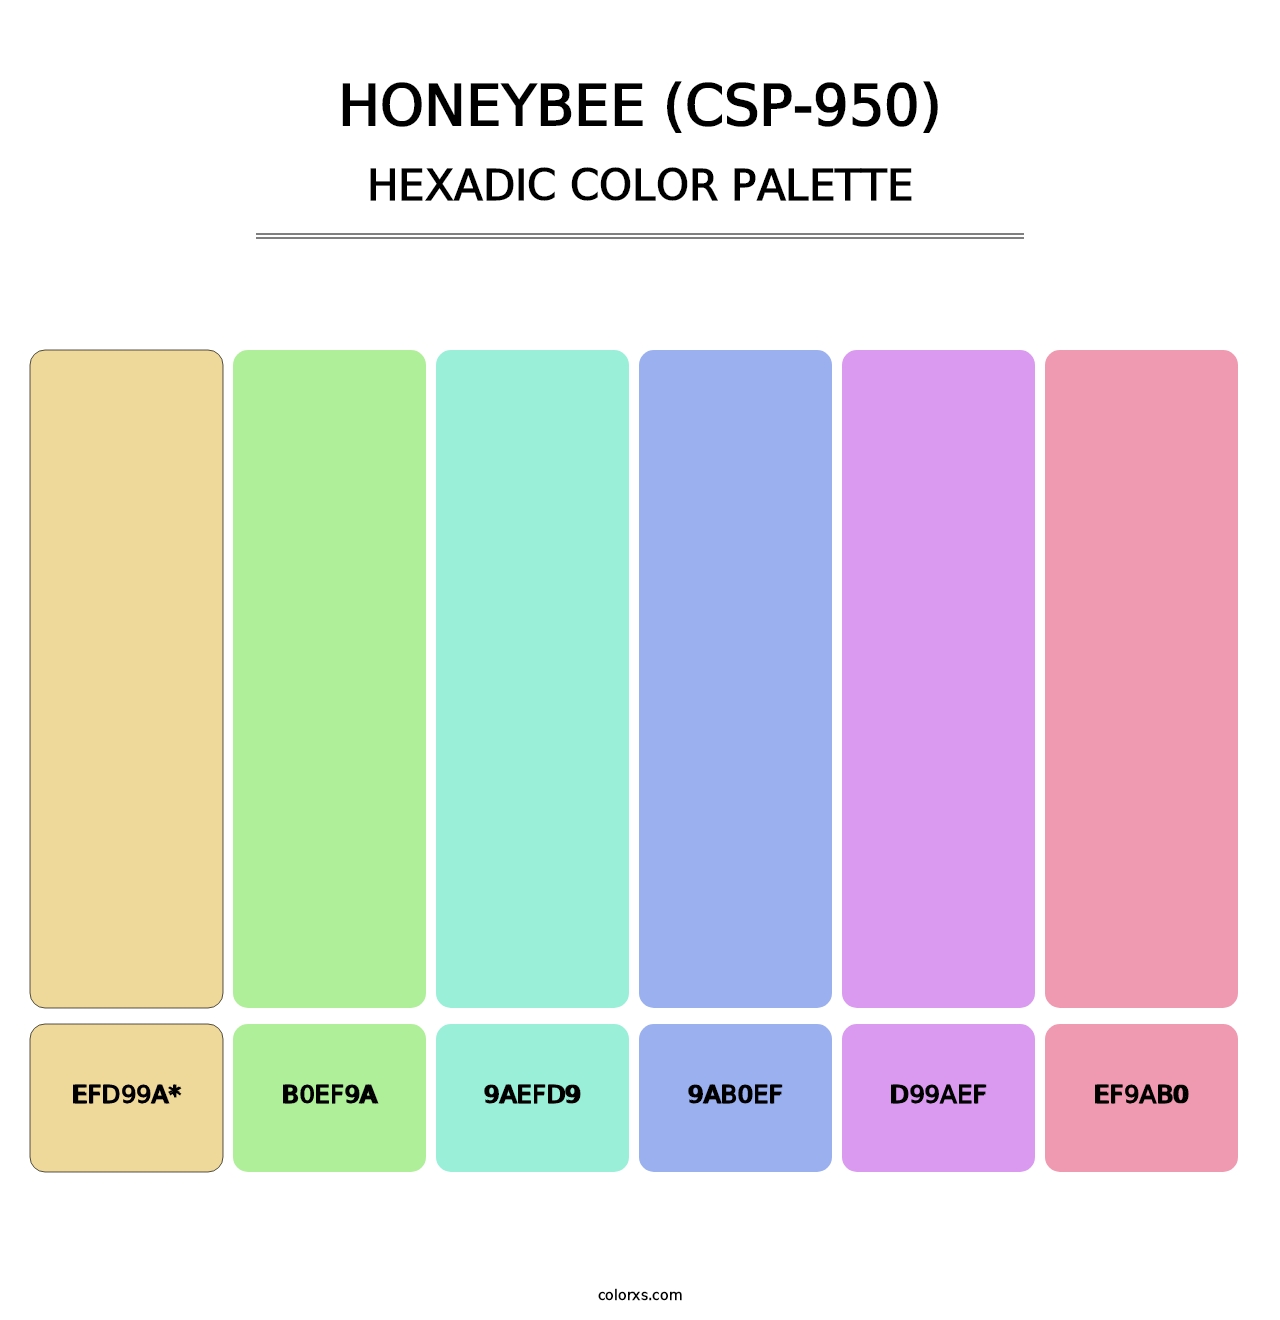 Honeybee (CSP-950) - Hexadic Color Palette